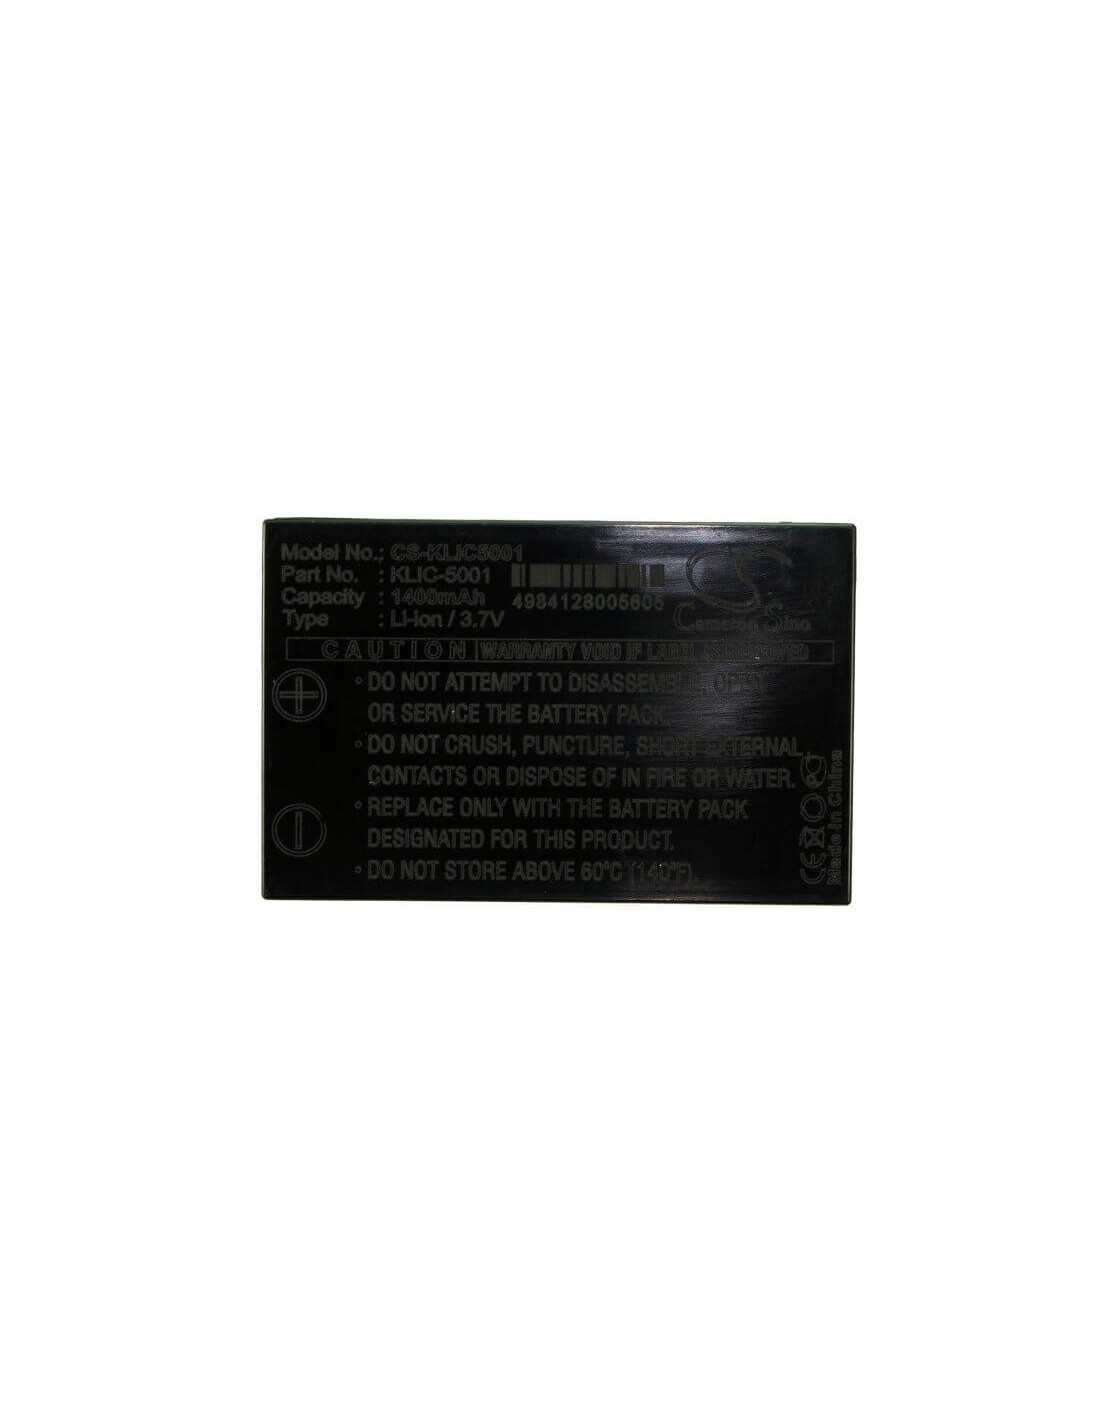 Battery for Kodak Easyshare Dx6490, Easyshare Dx7440, 3.7V, 1400mAh - 5.18Wh